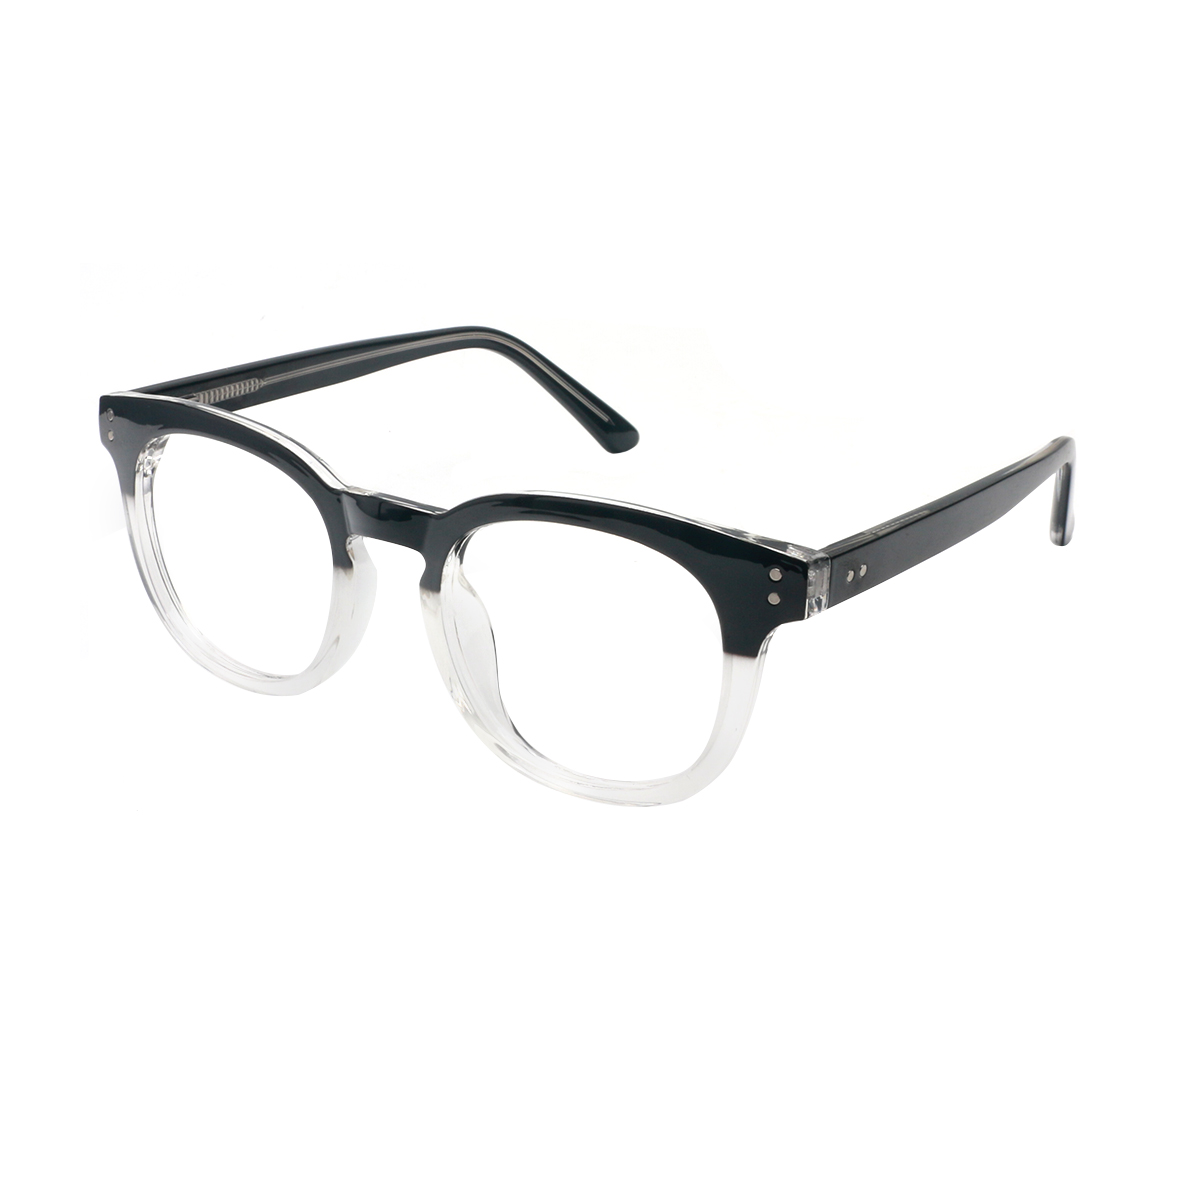 Rhodope - Oval Transparent Reading Glasses for Men & Women